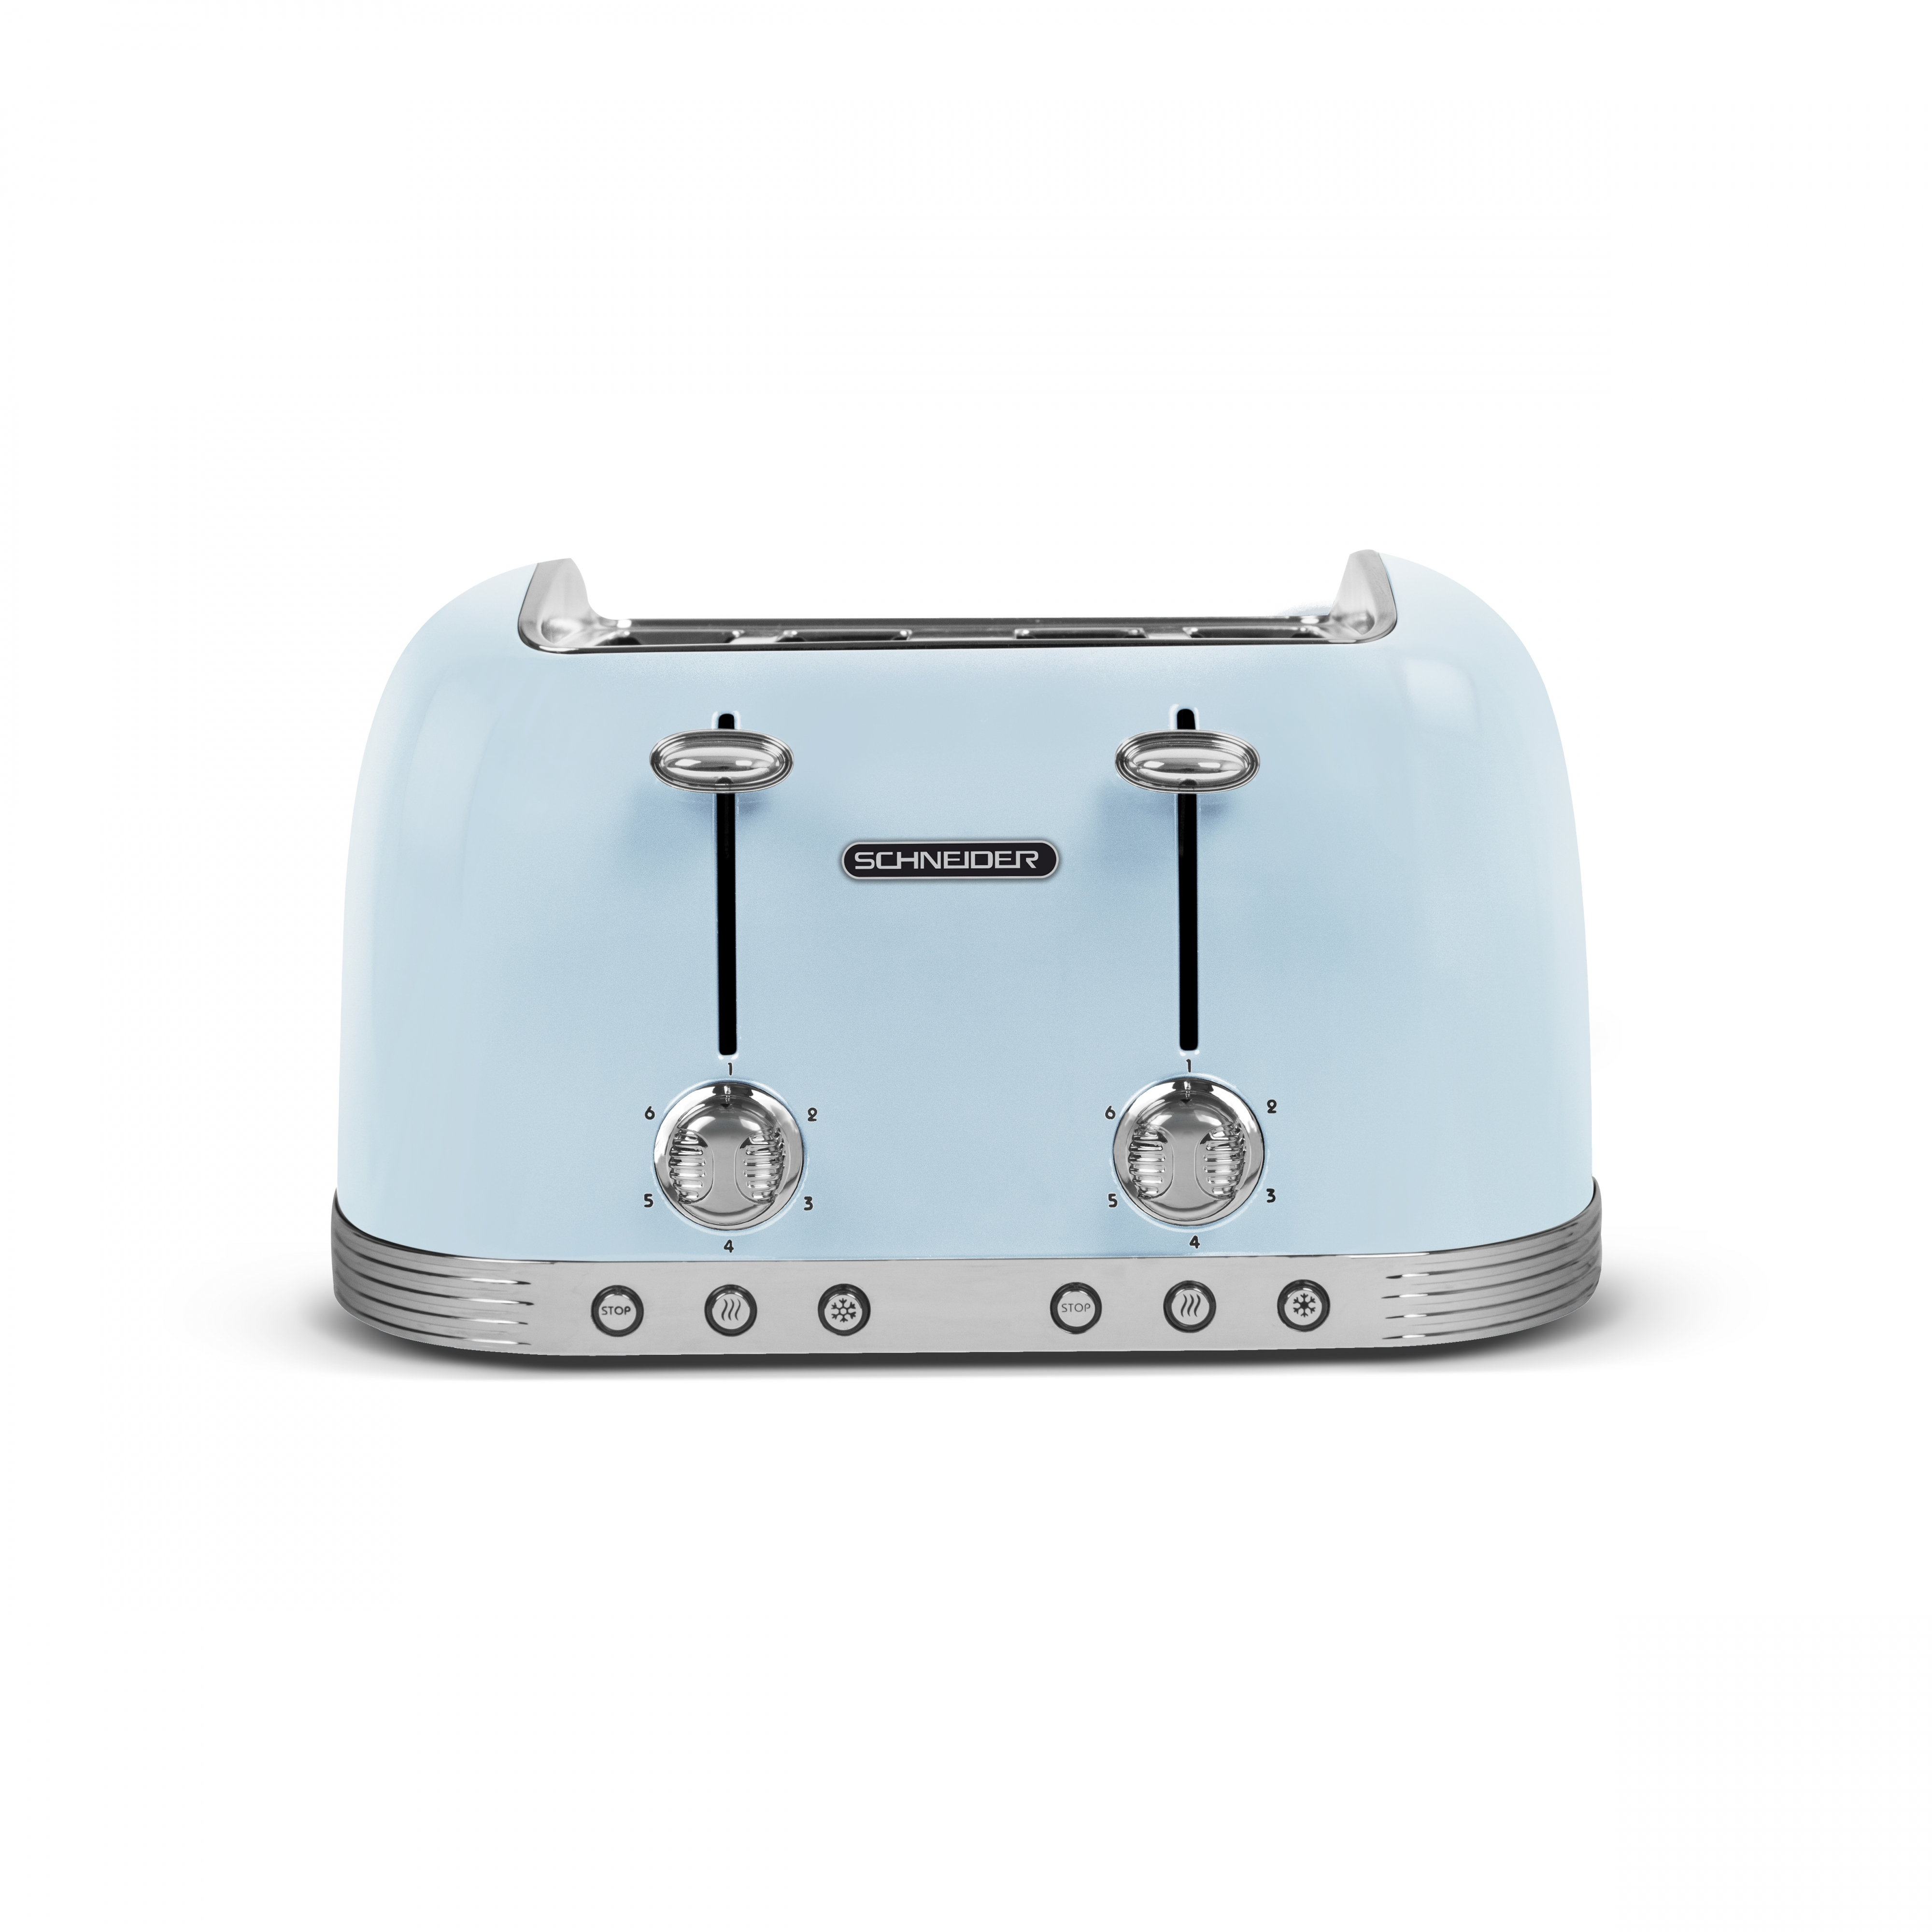 Schlitze: 4) Watt, (1630 WS704 SCHNEIDER Toaster blau Wasserkocher Set